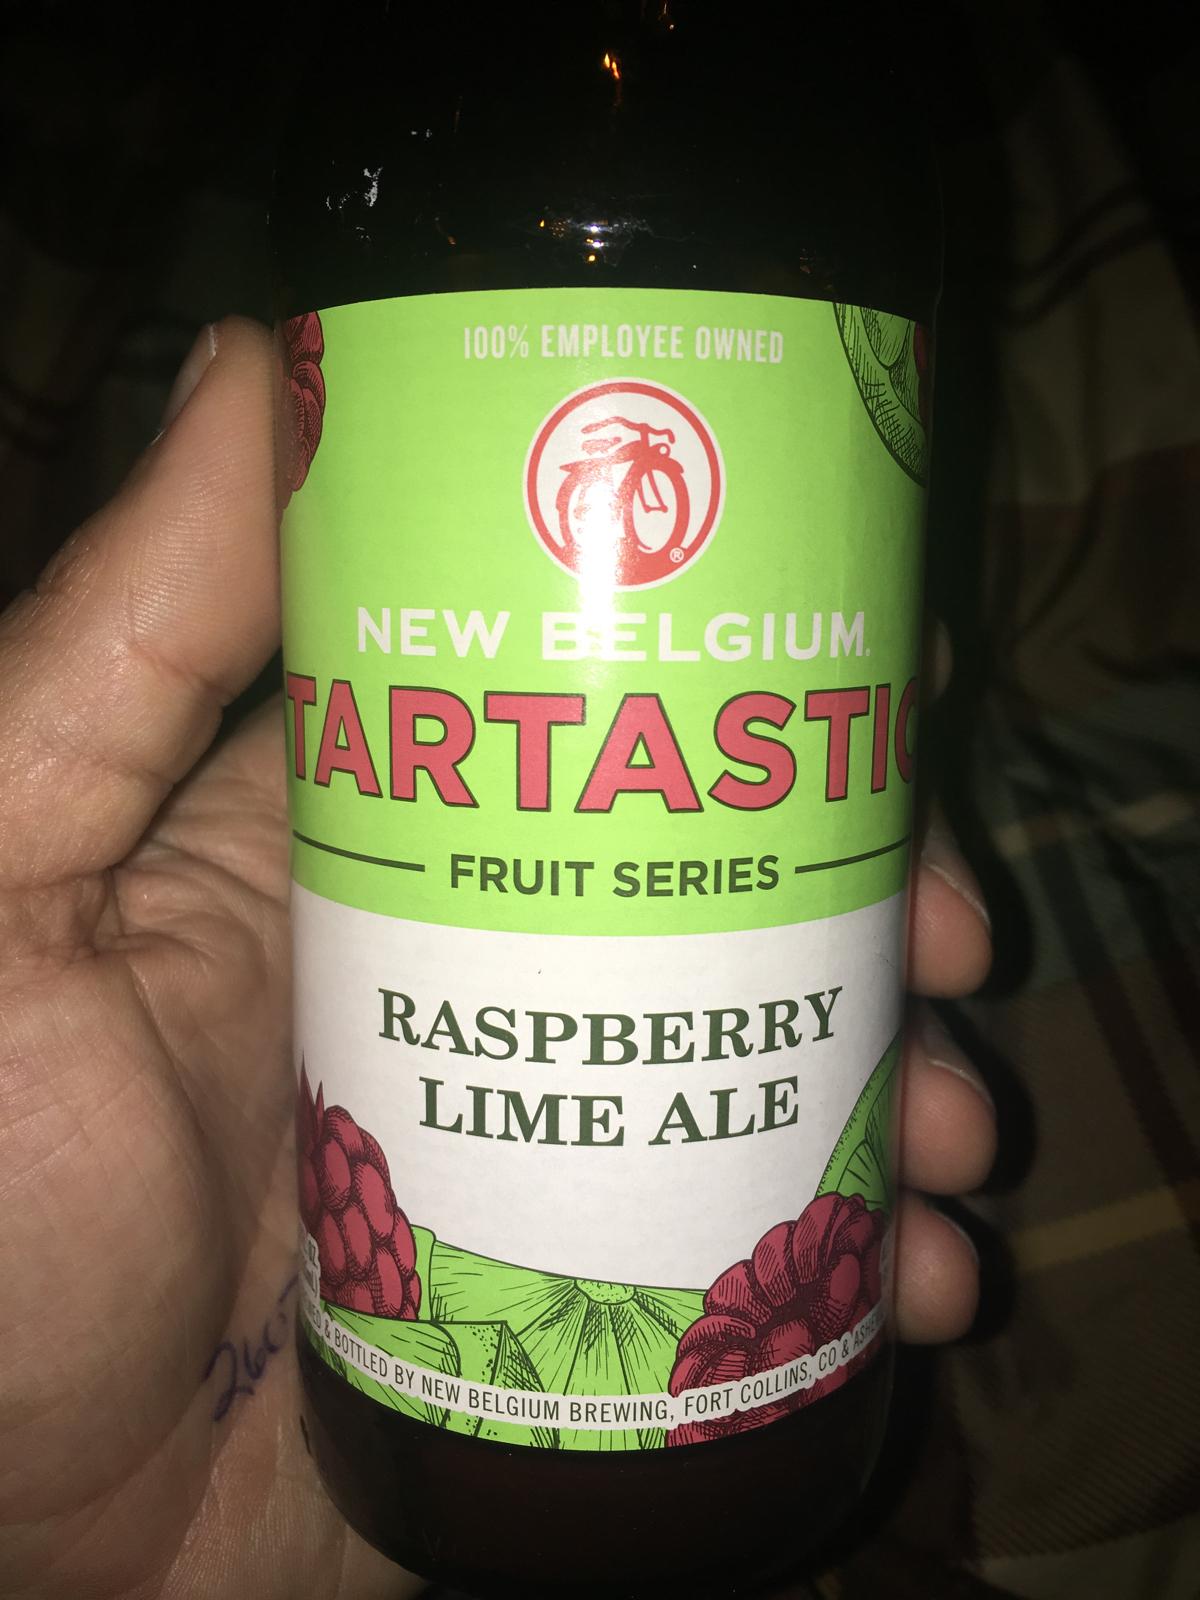 Tartastic Raspberry Lime Ale